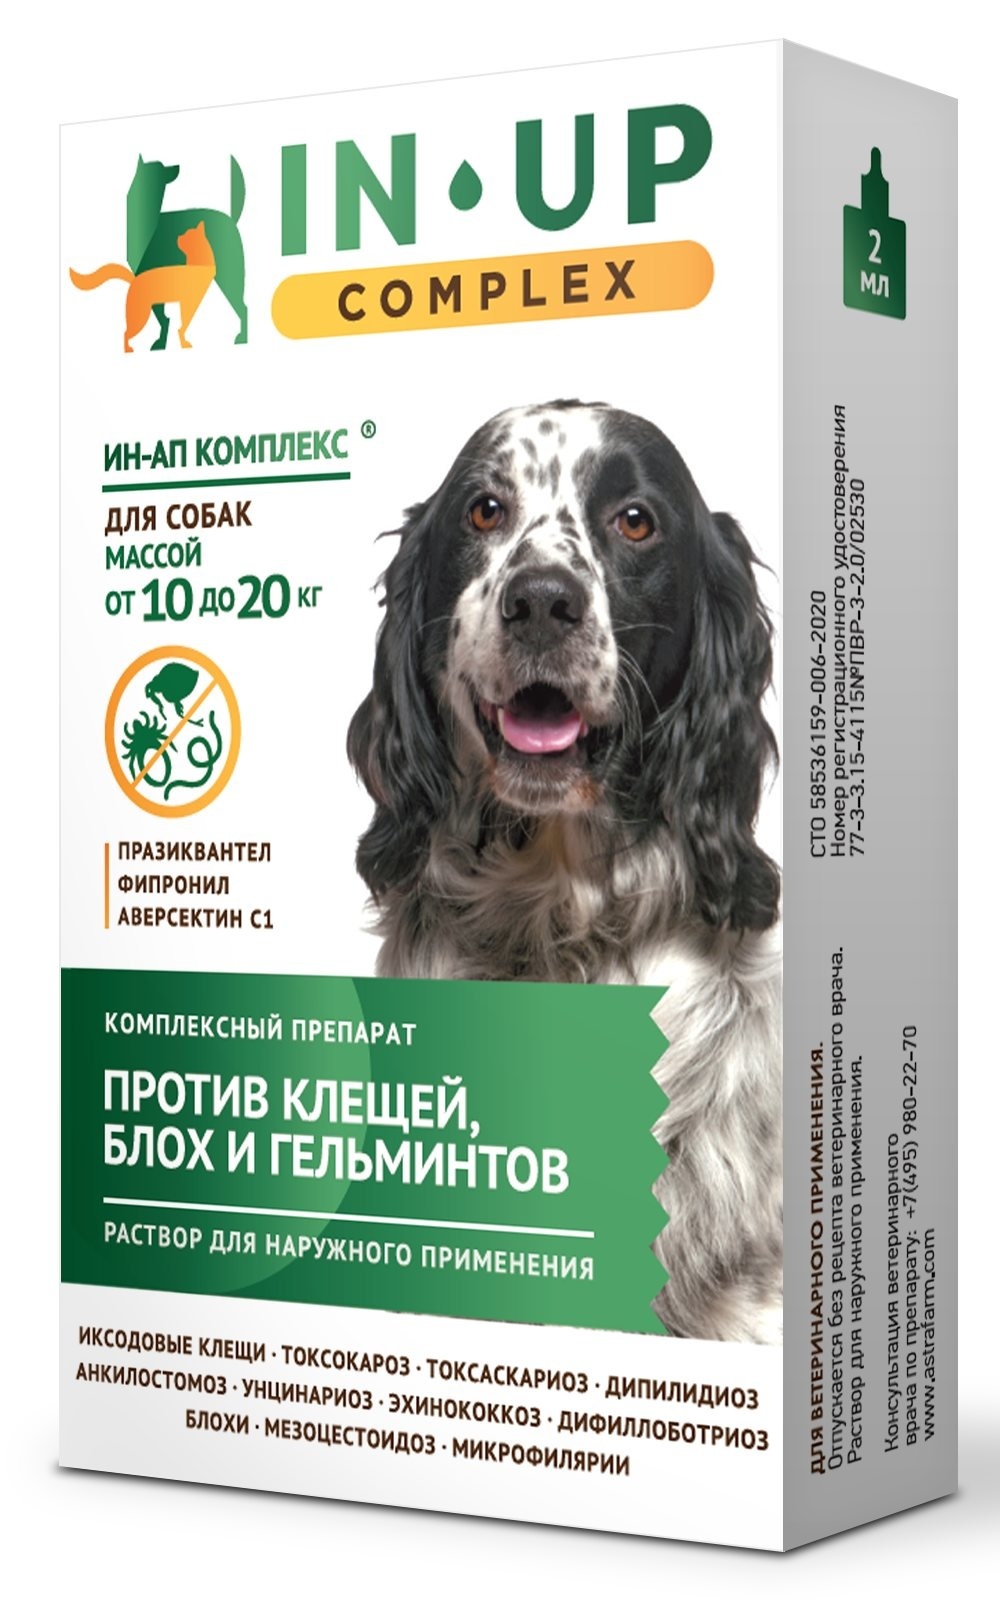 Астрафарм иН-АП комплекс для собак массой от 10 до 20 кг против блох, клещей, вшей, власоедов и гельминтов (22 г)